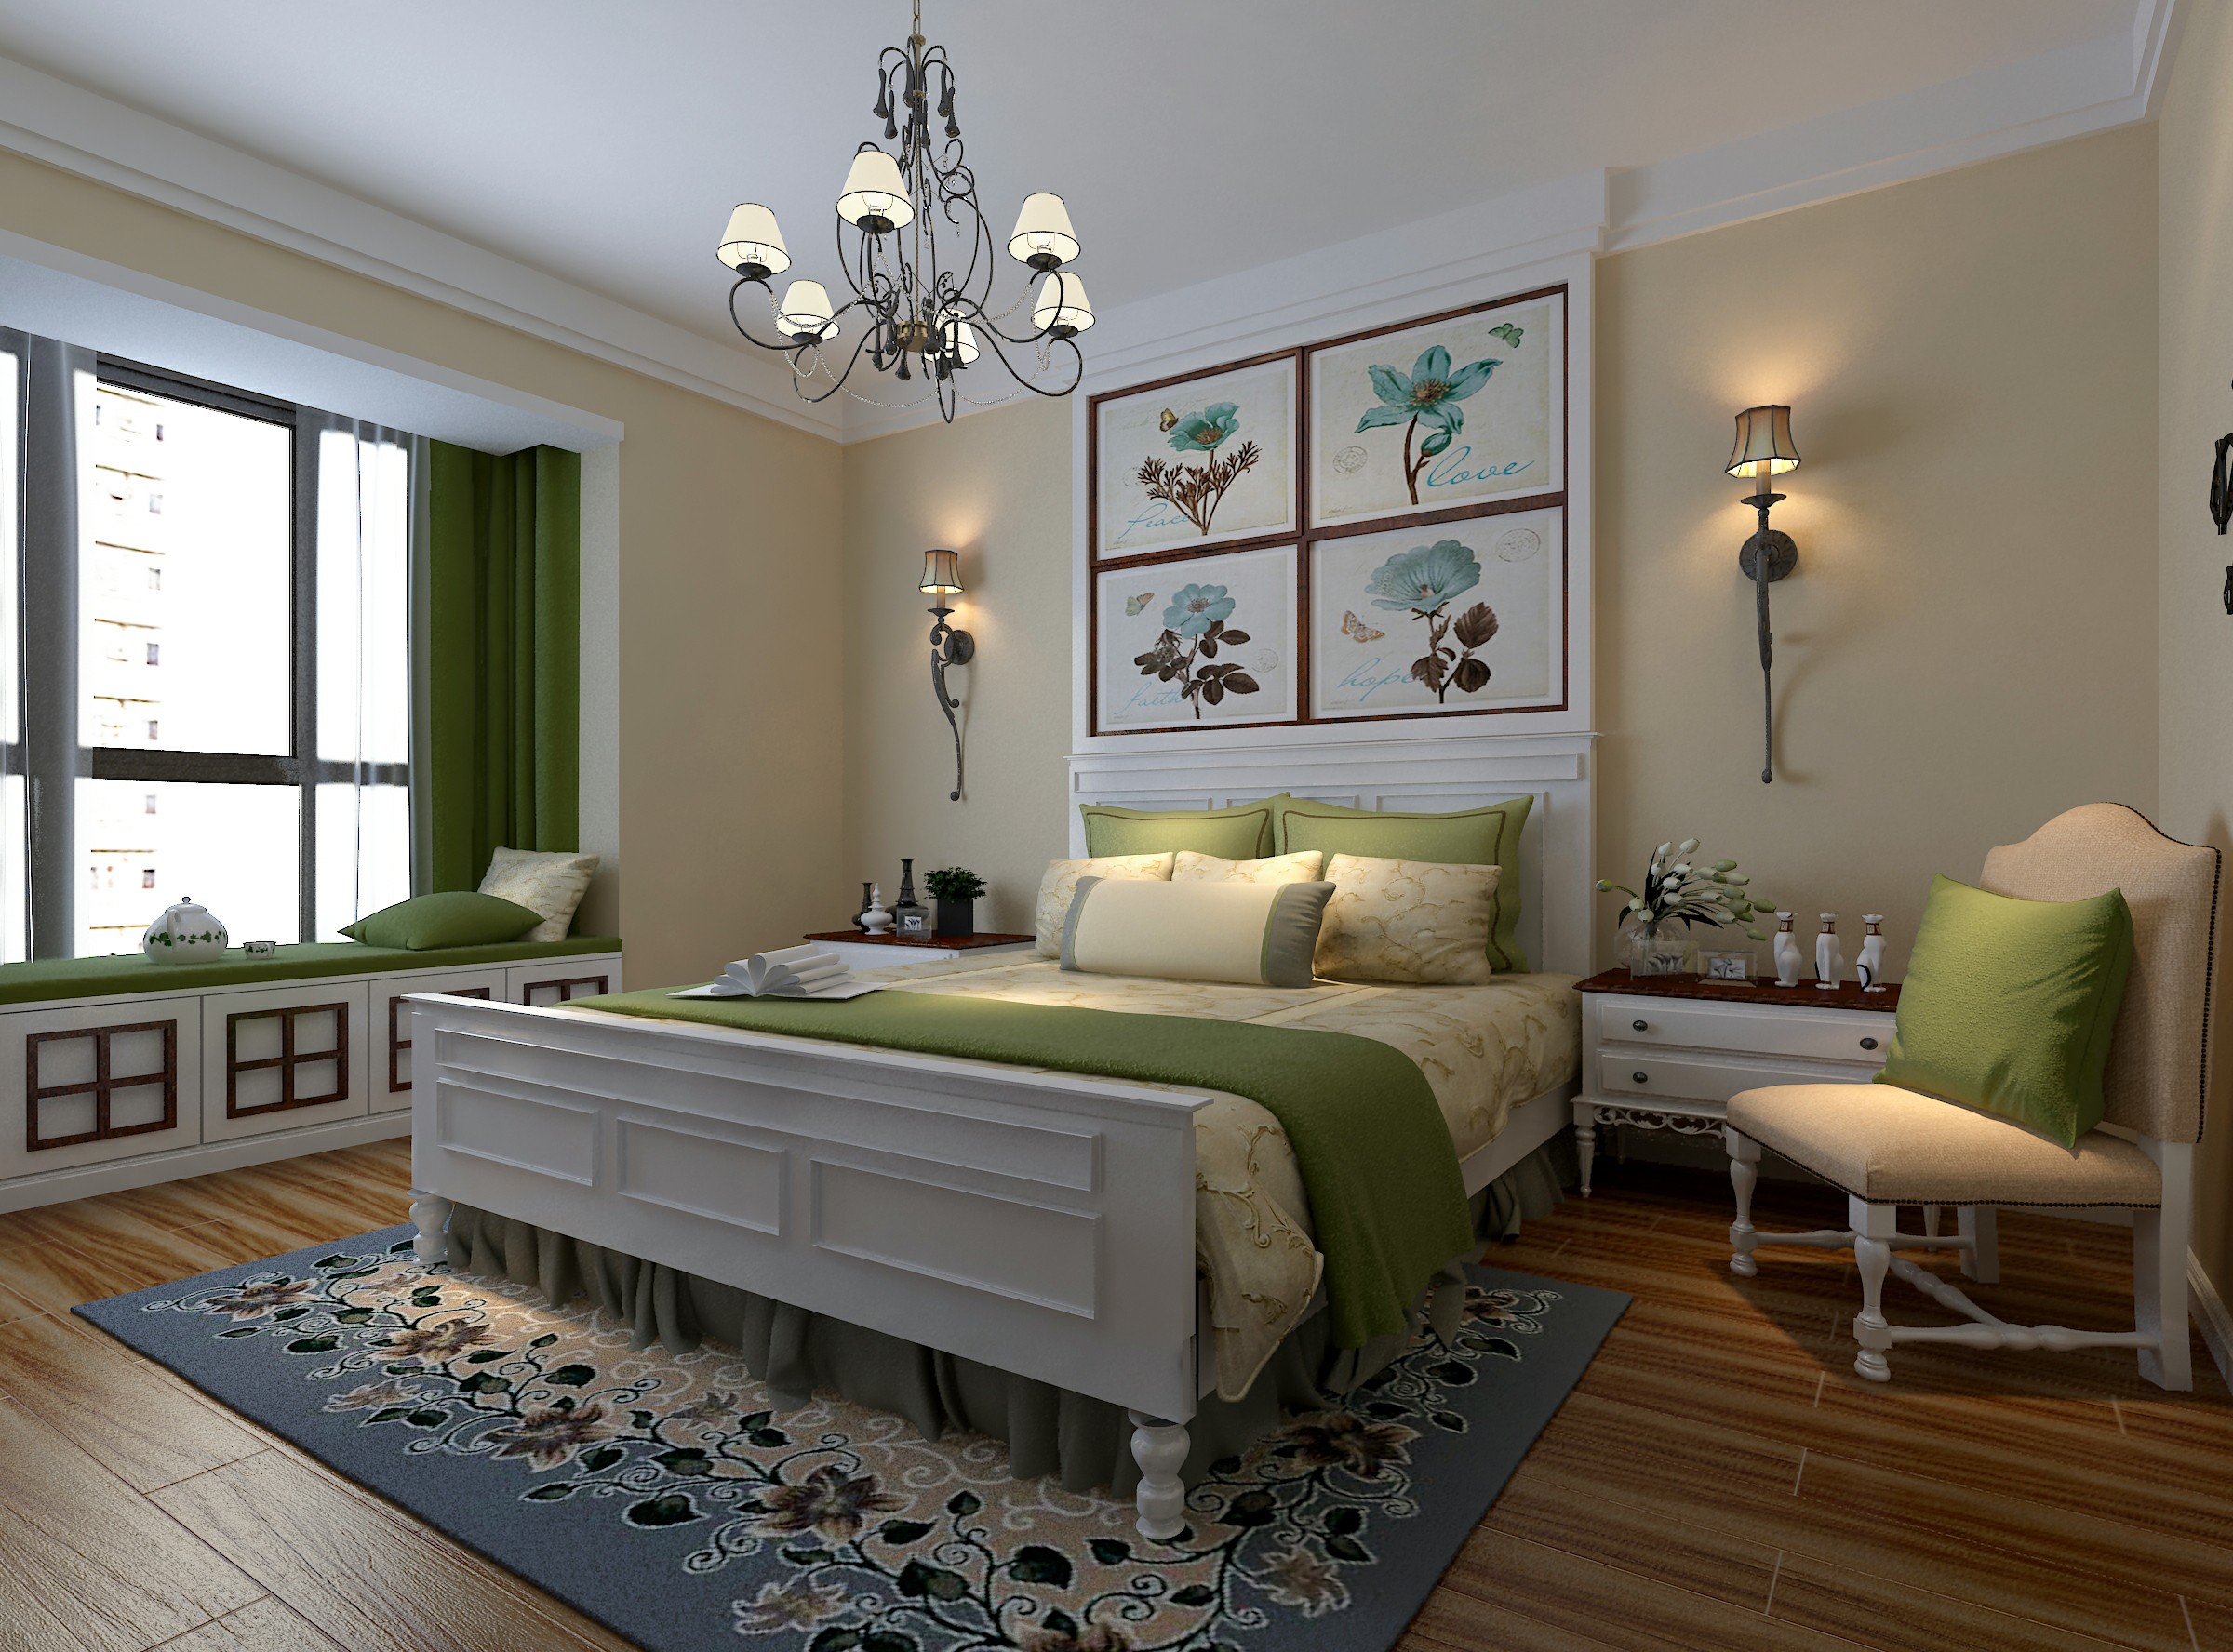 浅色舒适的现代风格大户型卧室装修效果图